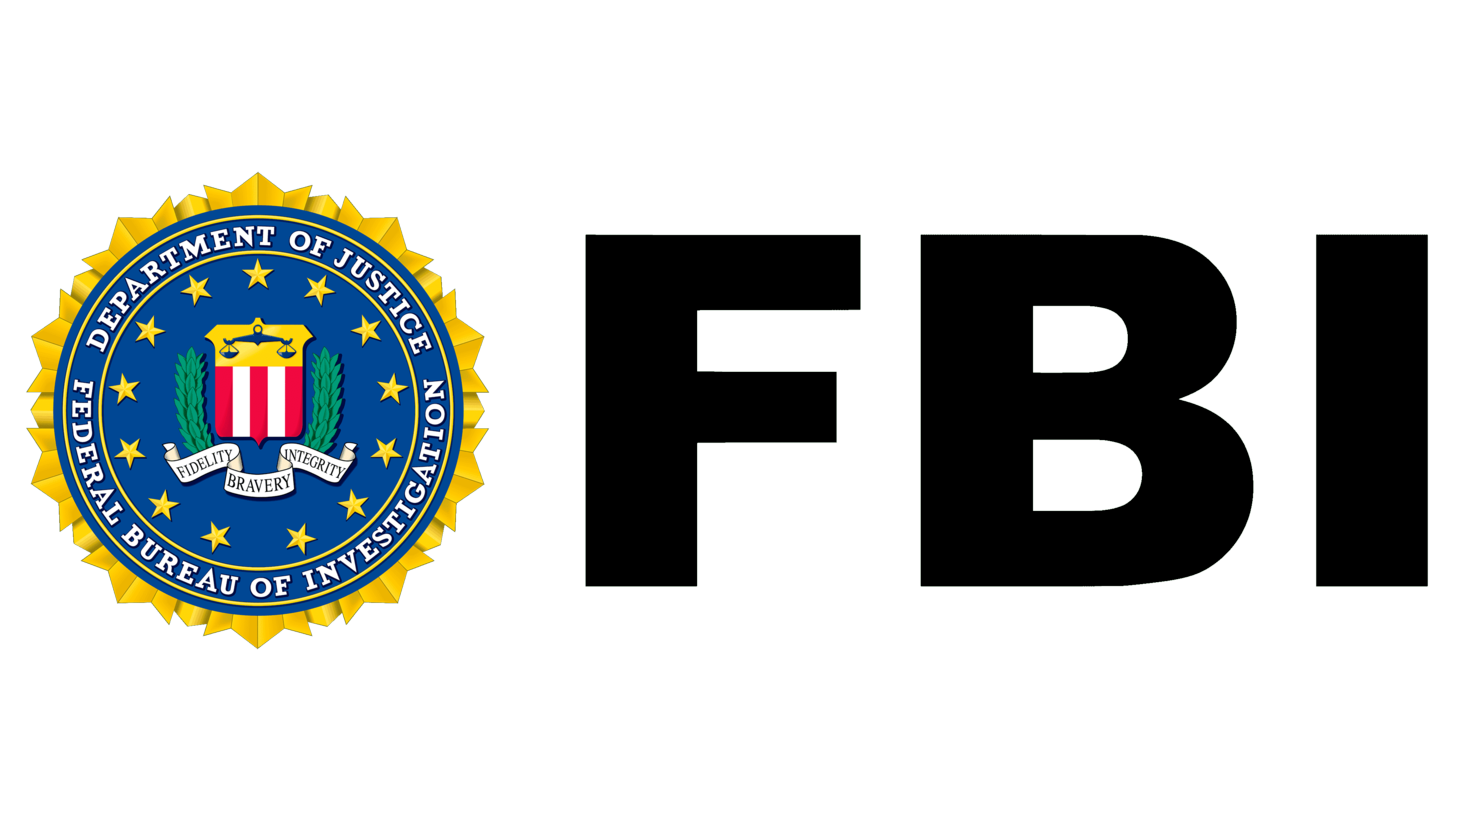 Fbi symbol